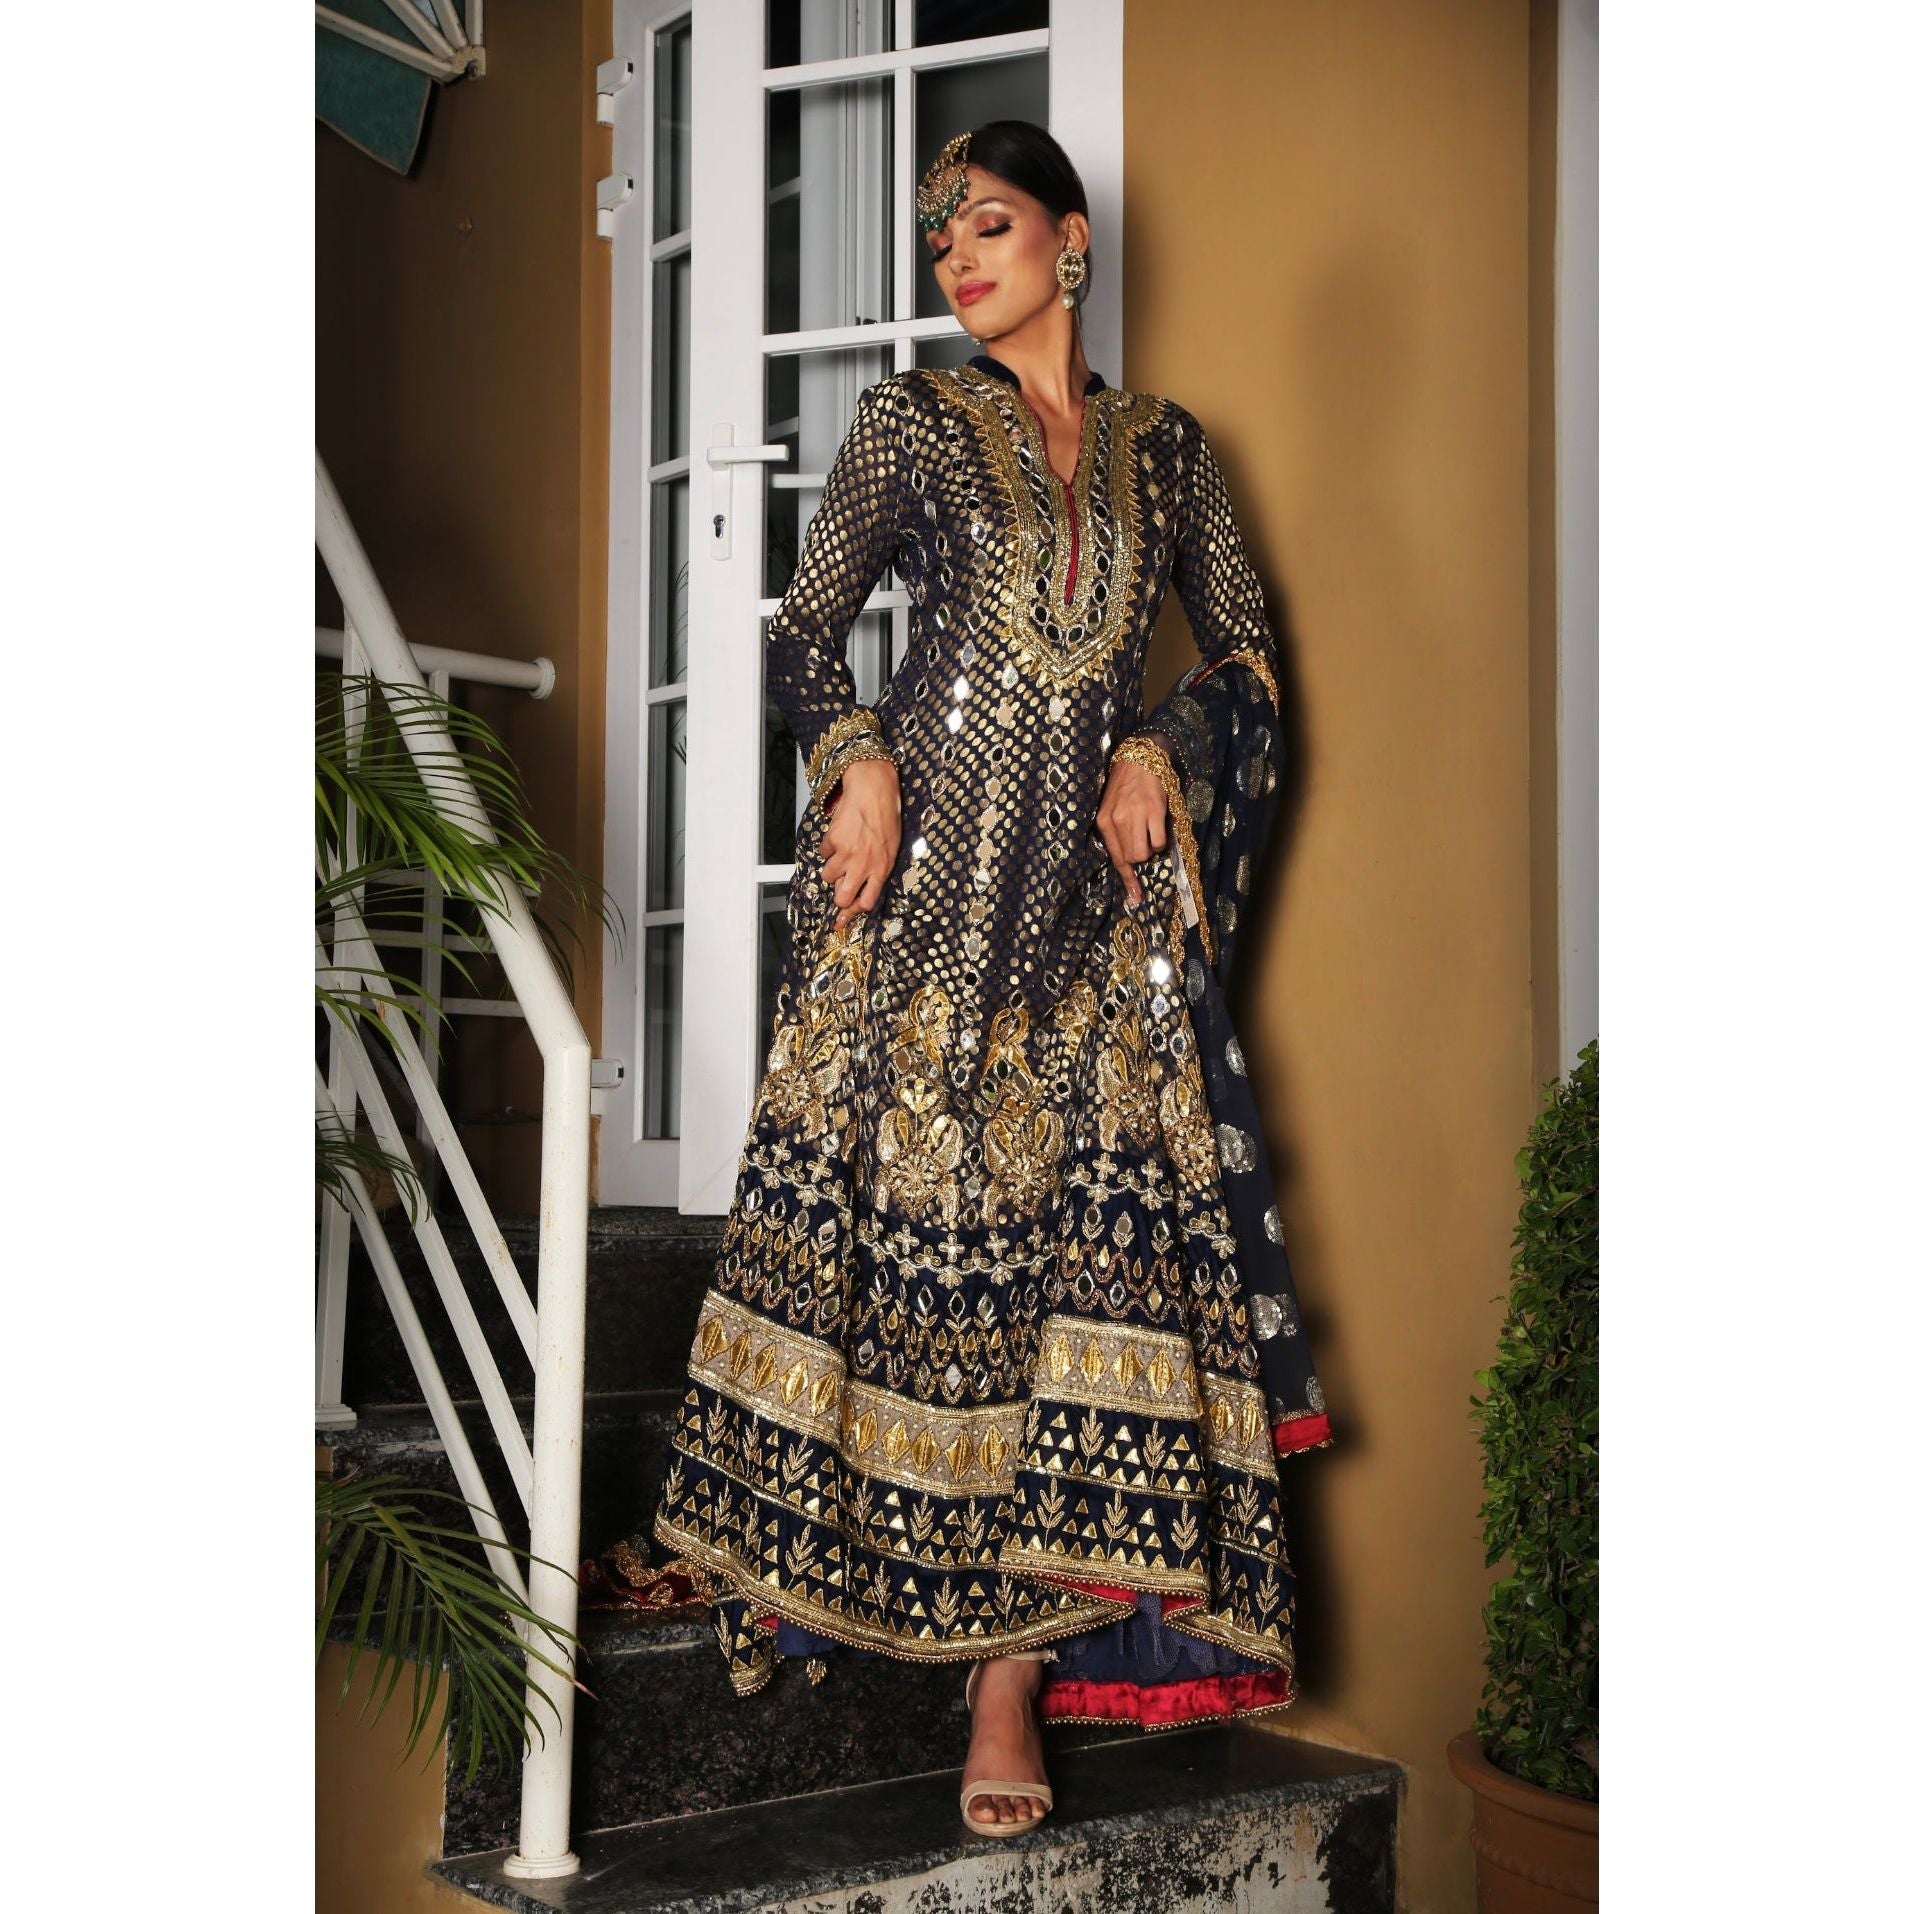 Black Embroidered Anarkali - Indian Designer Bridal Wedding Outfit